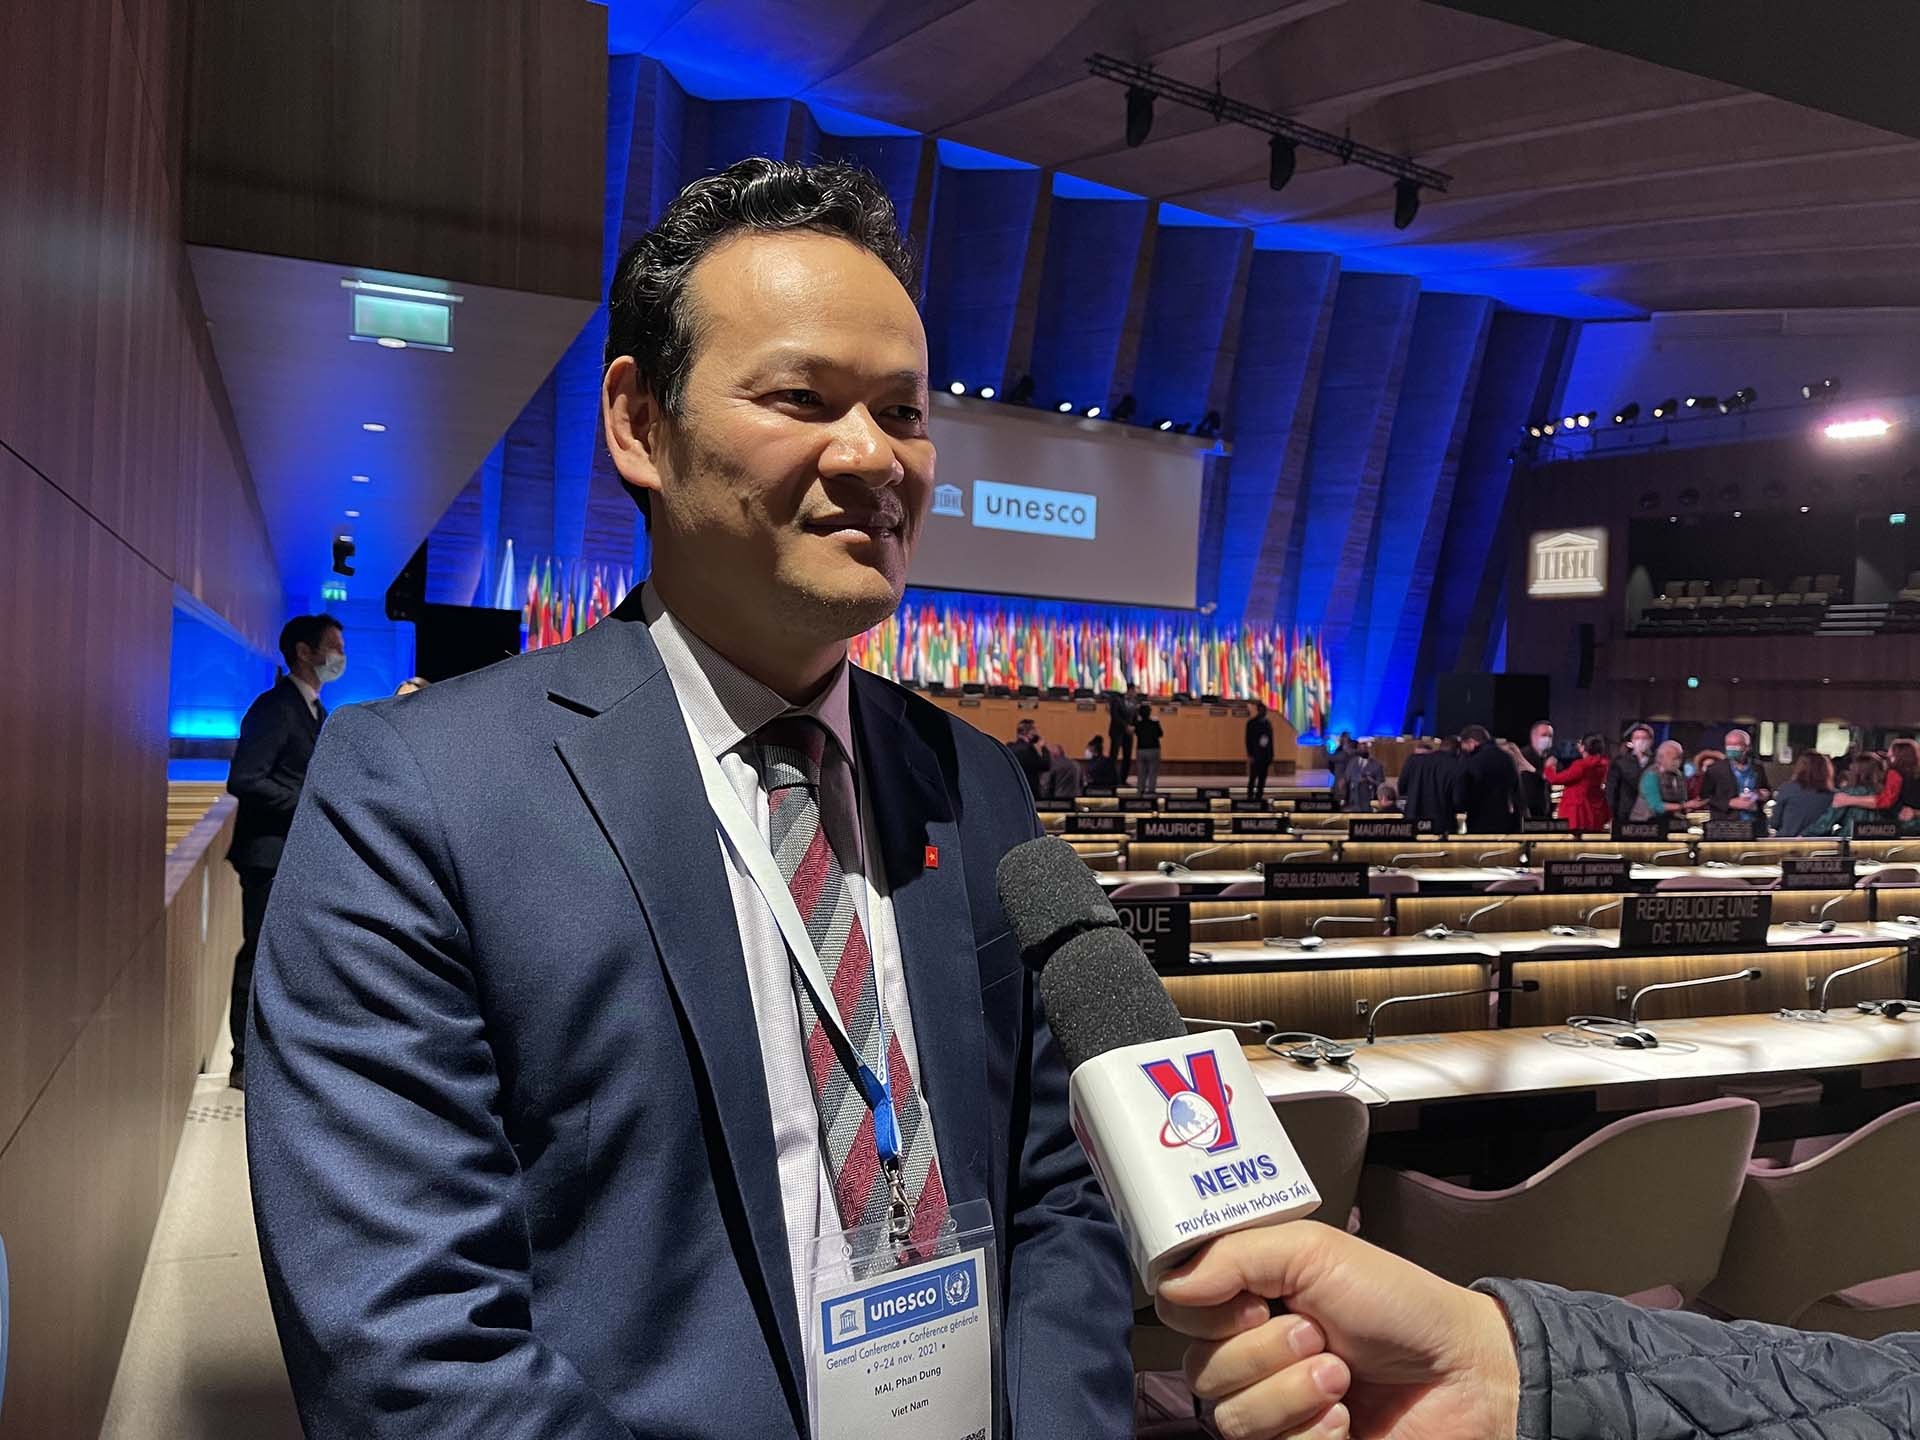 Ông Mai Phan Dũng, Tổng thư ký Ủy ban quốc gia UNESCO Việt Nam, Vụ trưởng vụ Ngoại giao Văn hóa và UNESCO, thuộc Bộ Ngoại giao, đồng thời là Trưởng Phái đoàn Việt Nam tham dự Đại hội đồng UNESCO lần thứ 41, trả lời phỏng vấn về kết quả phiên họp. (Nguồn: TTXVN)